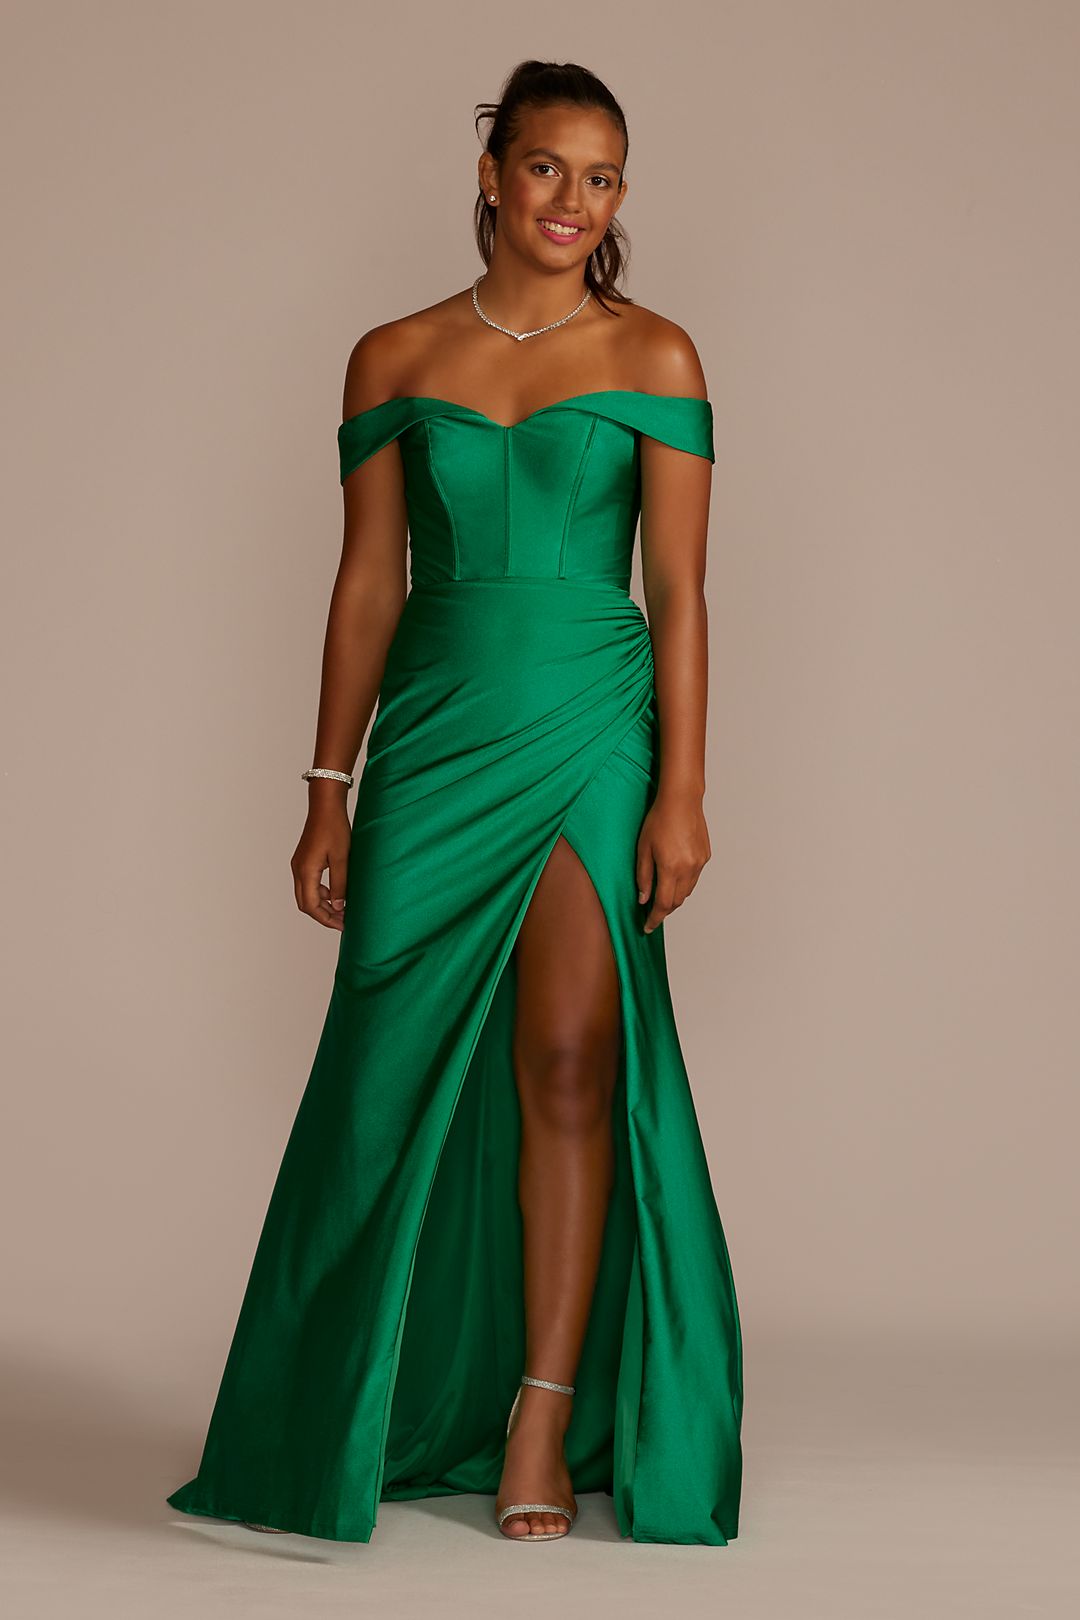 Best Prom Dress Color Trends David S Bridal Blog